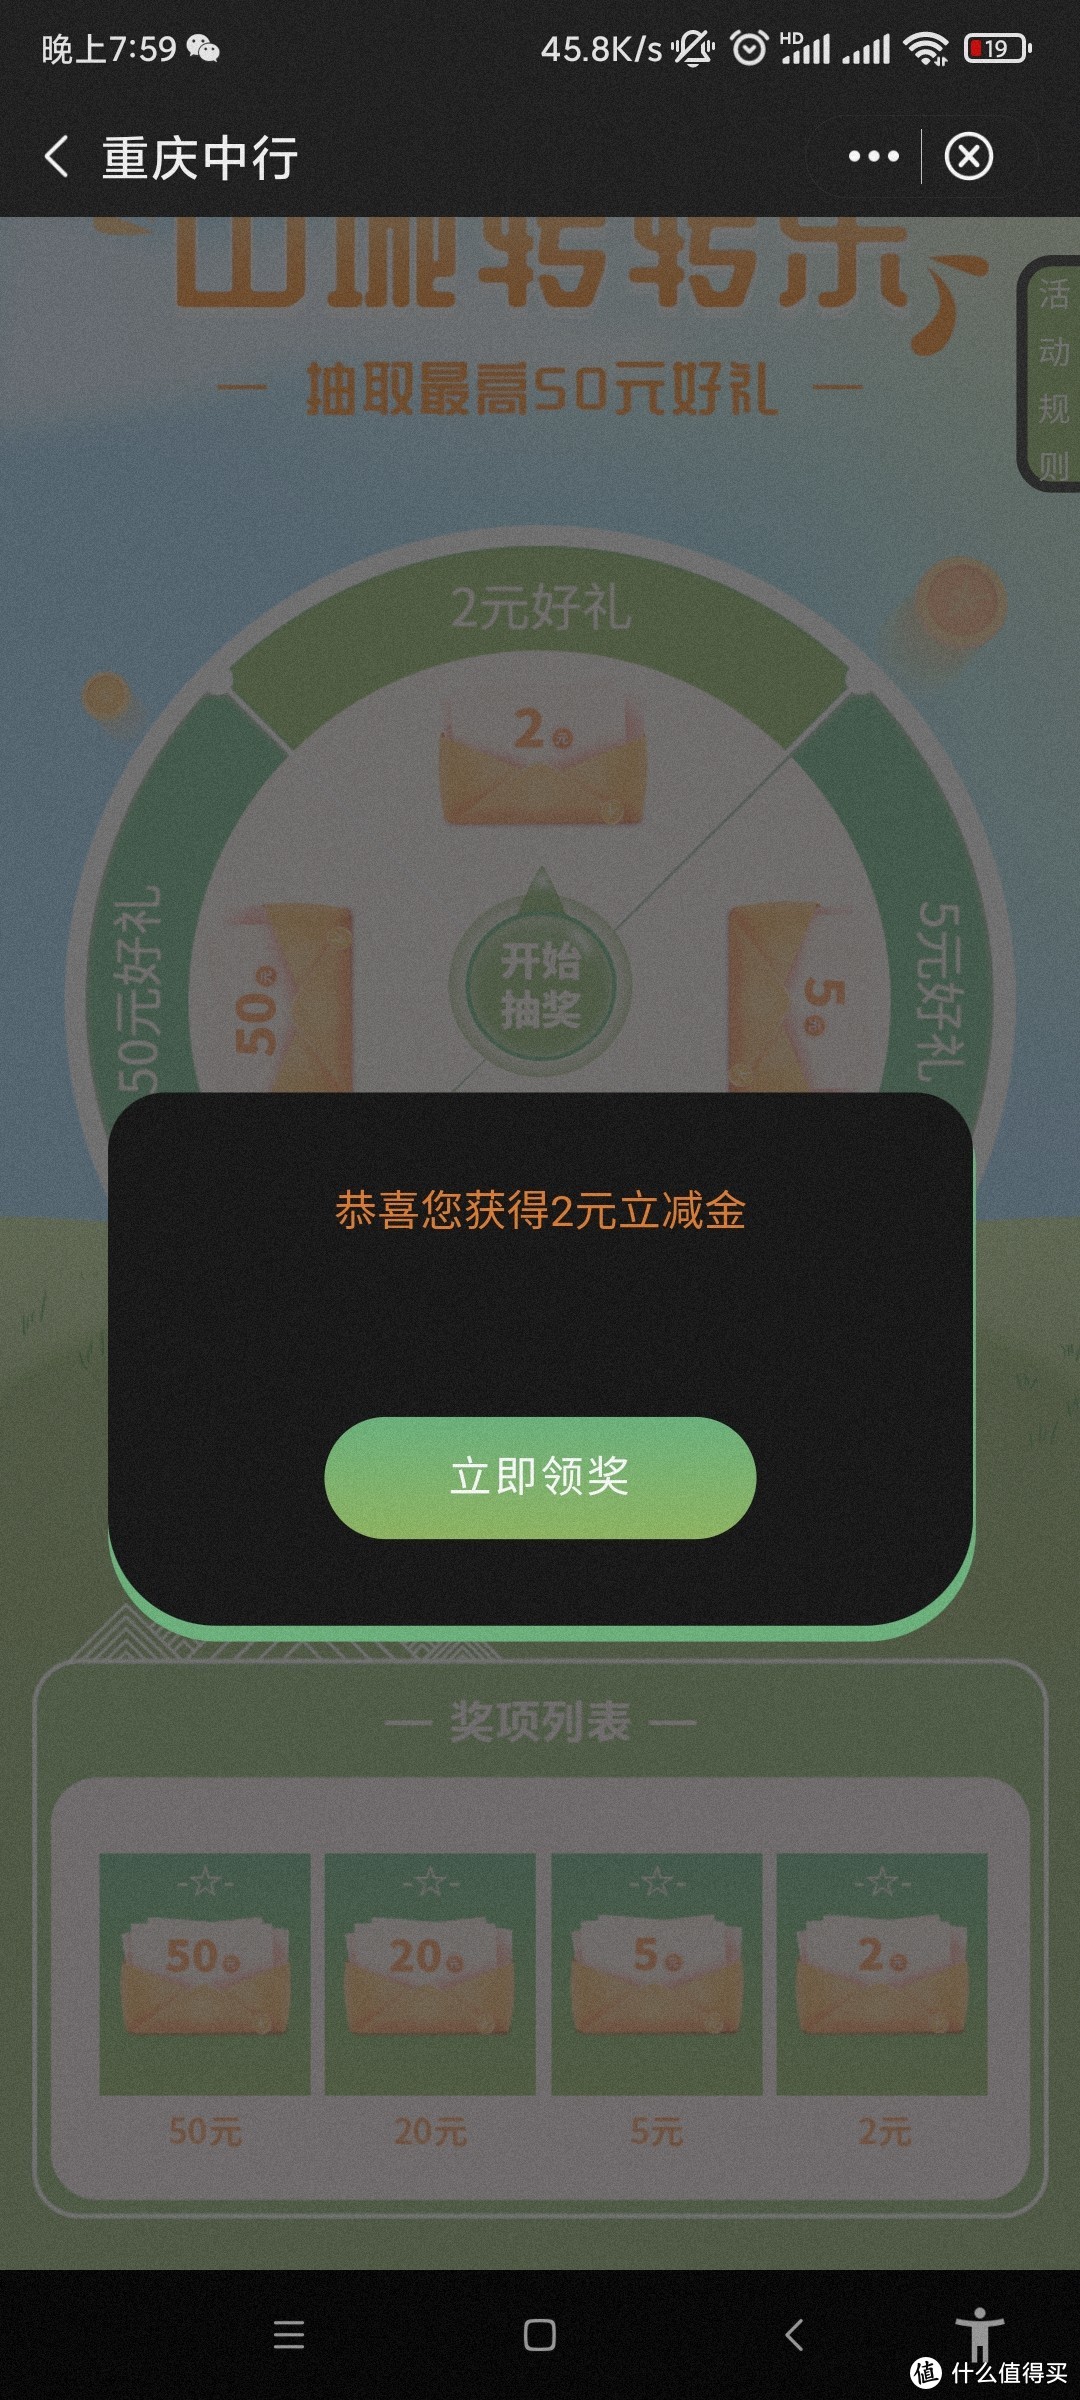 重庆 中国银行 支付0.1得2元微信立减金